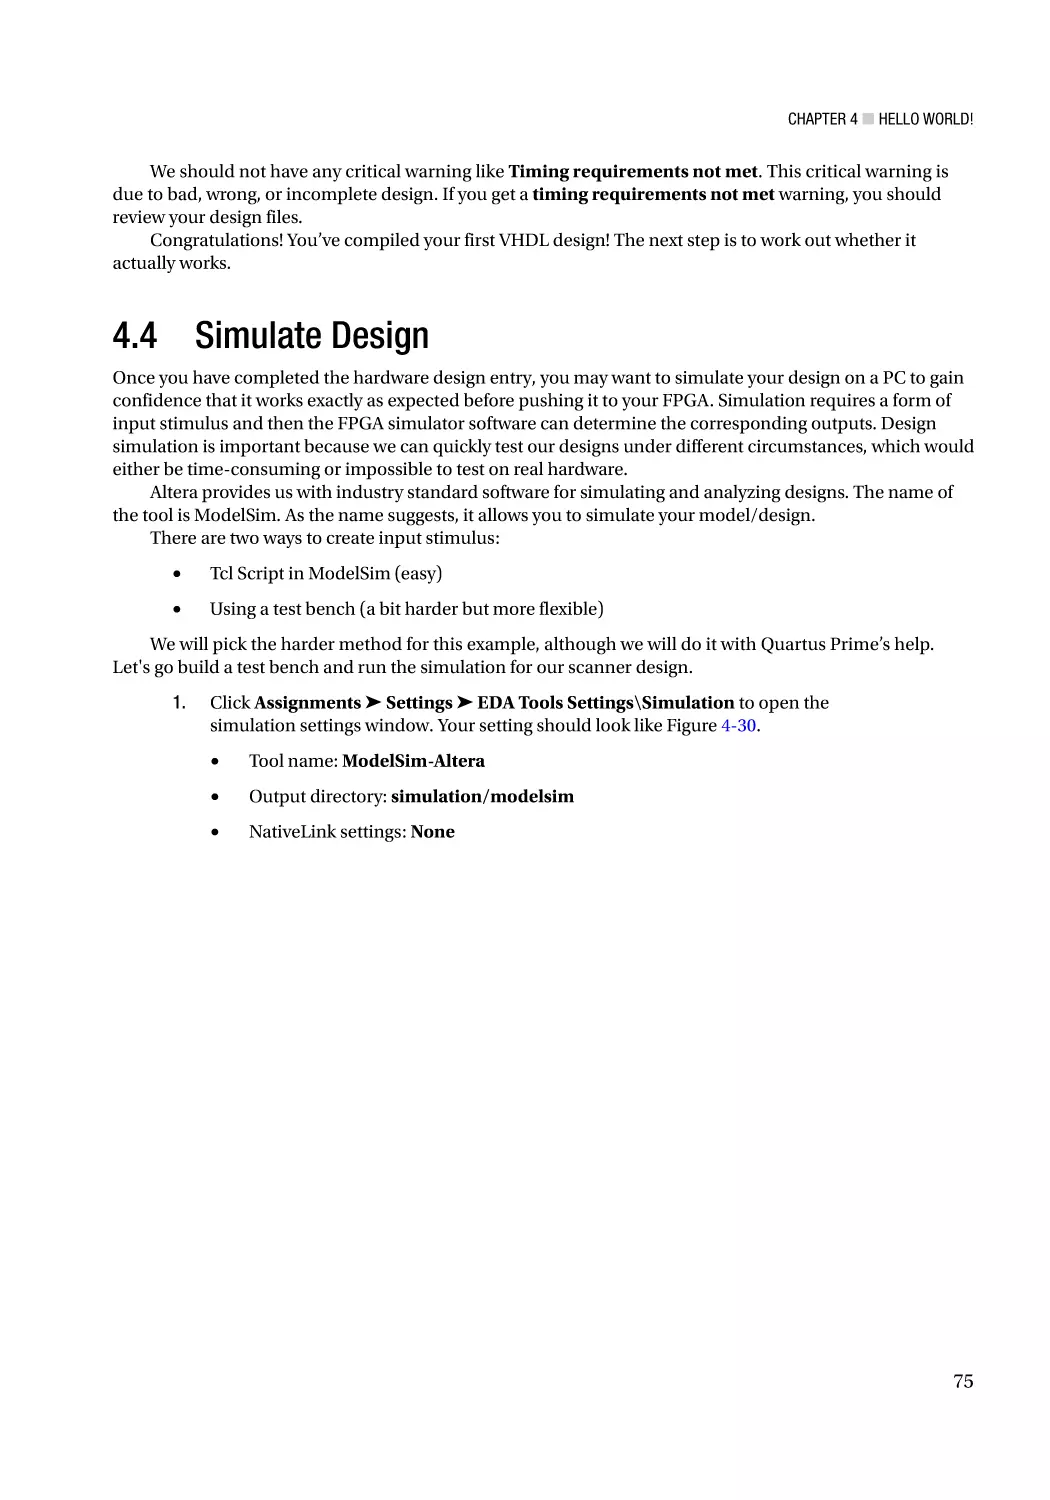 4.4 Simulate Design